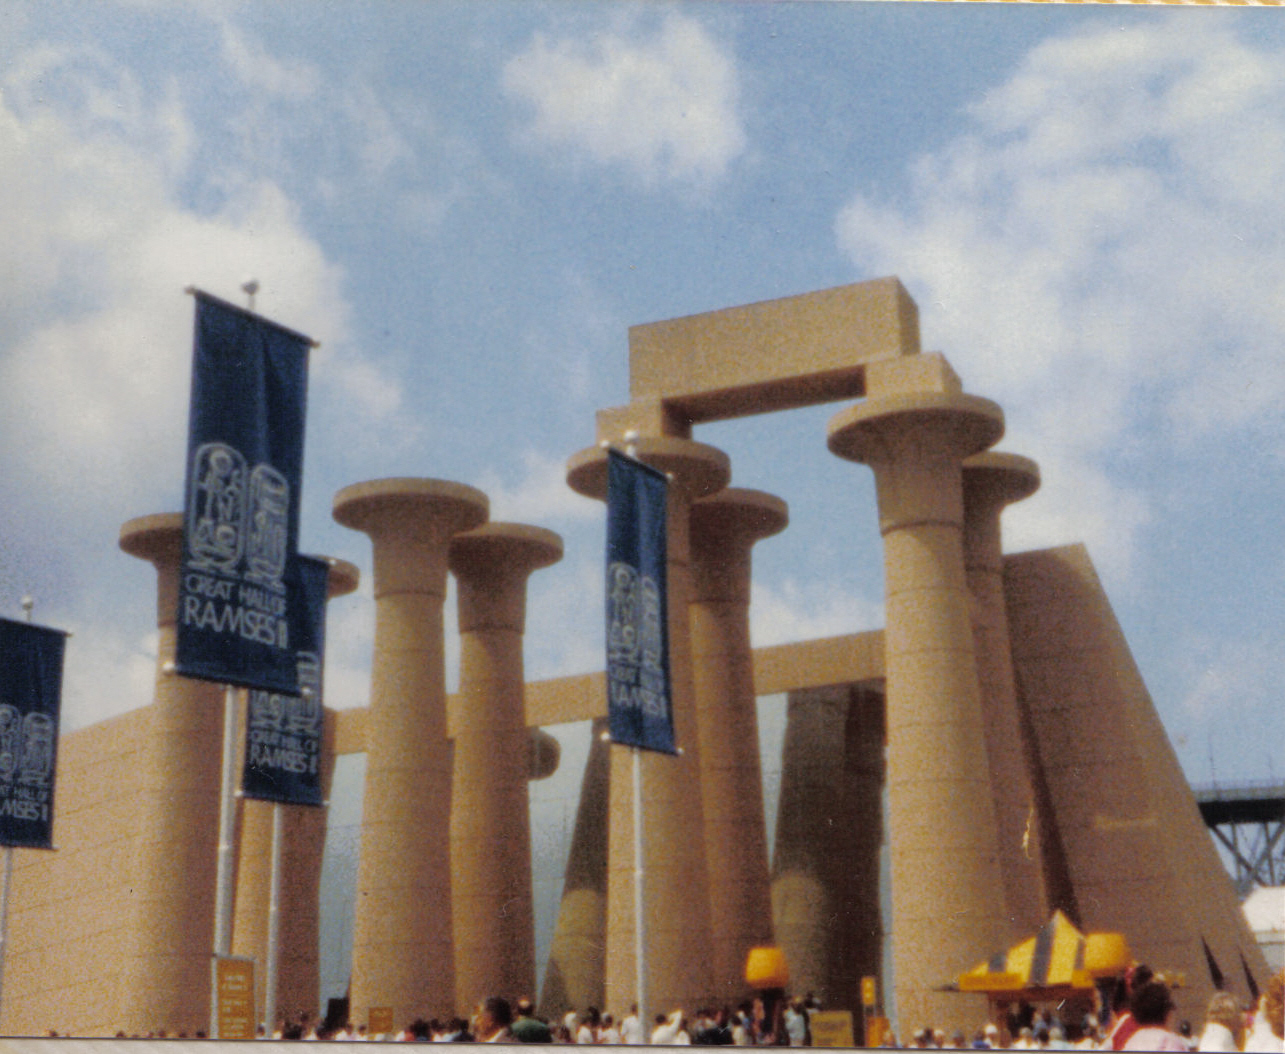 Ramses II Exhibit, Vancouver Expo '86